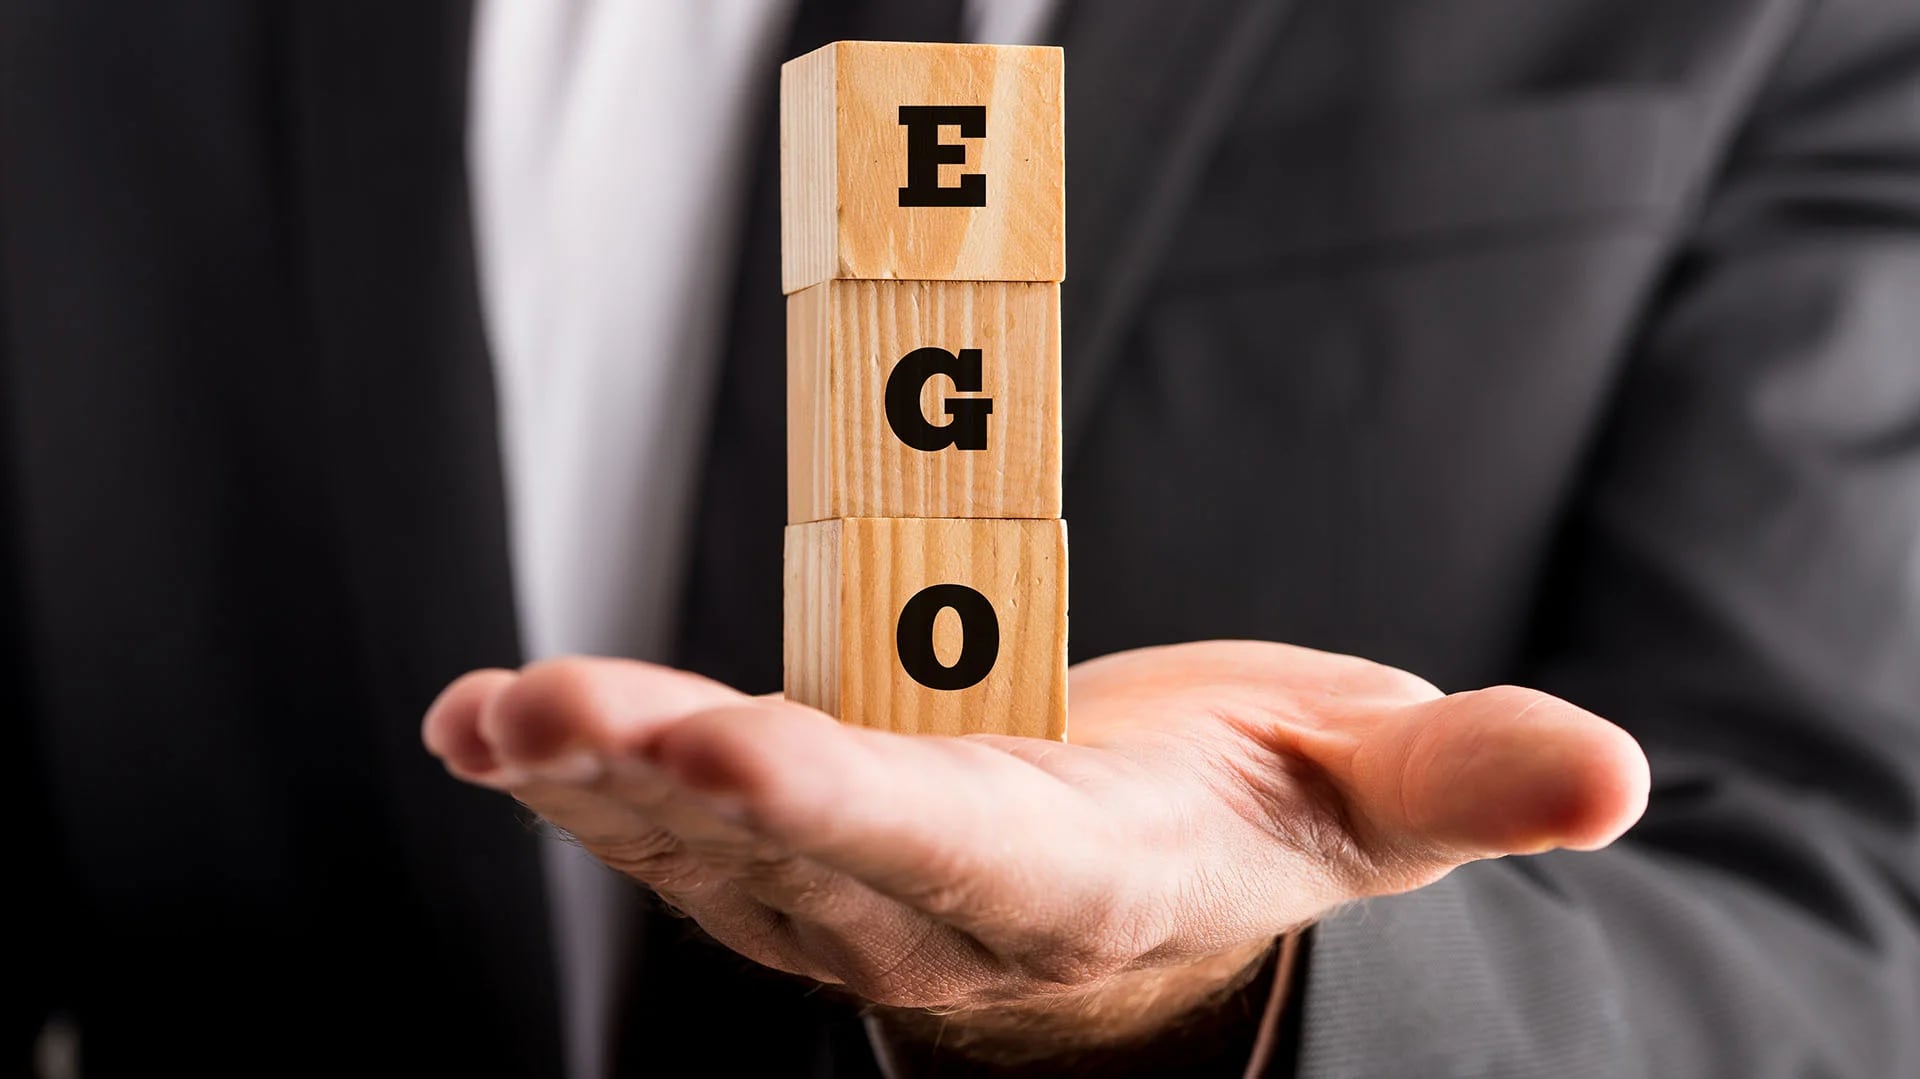 El ego elevado complica la vida tanto del que lo padece como de los que lo rodean (Getty)